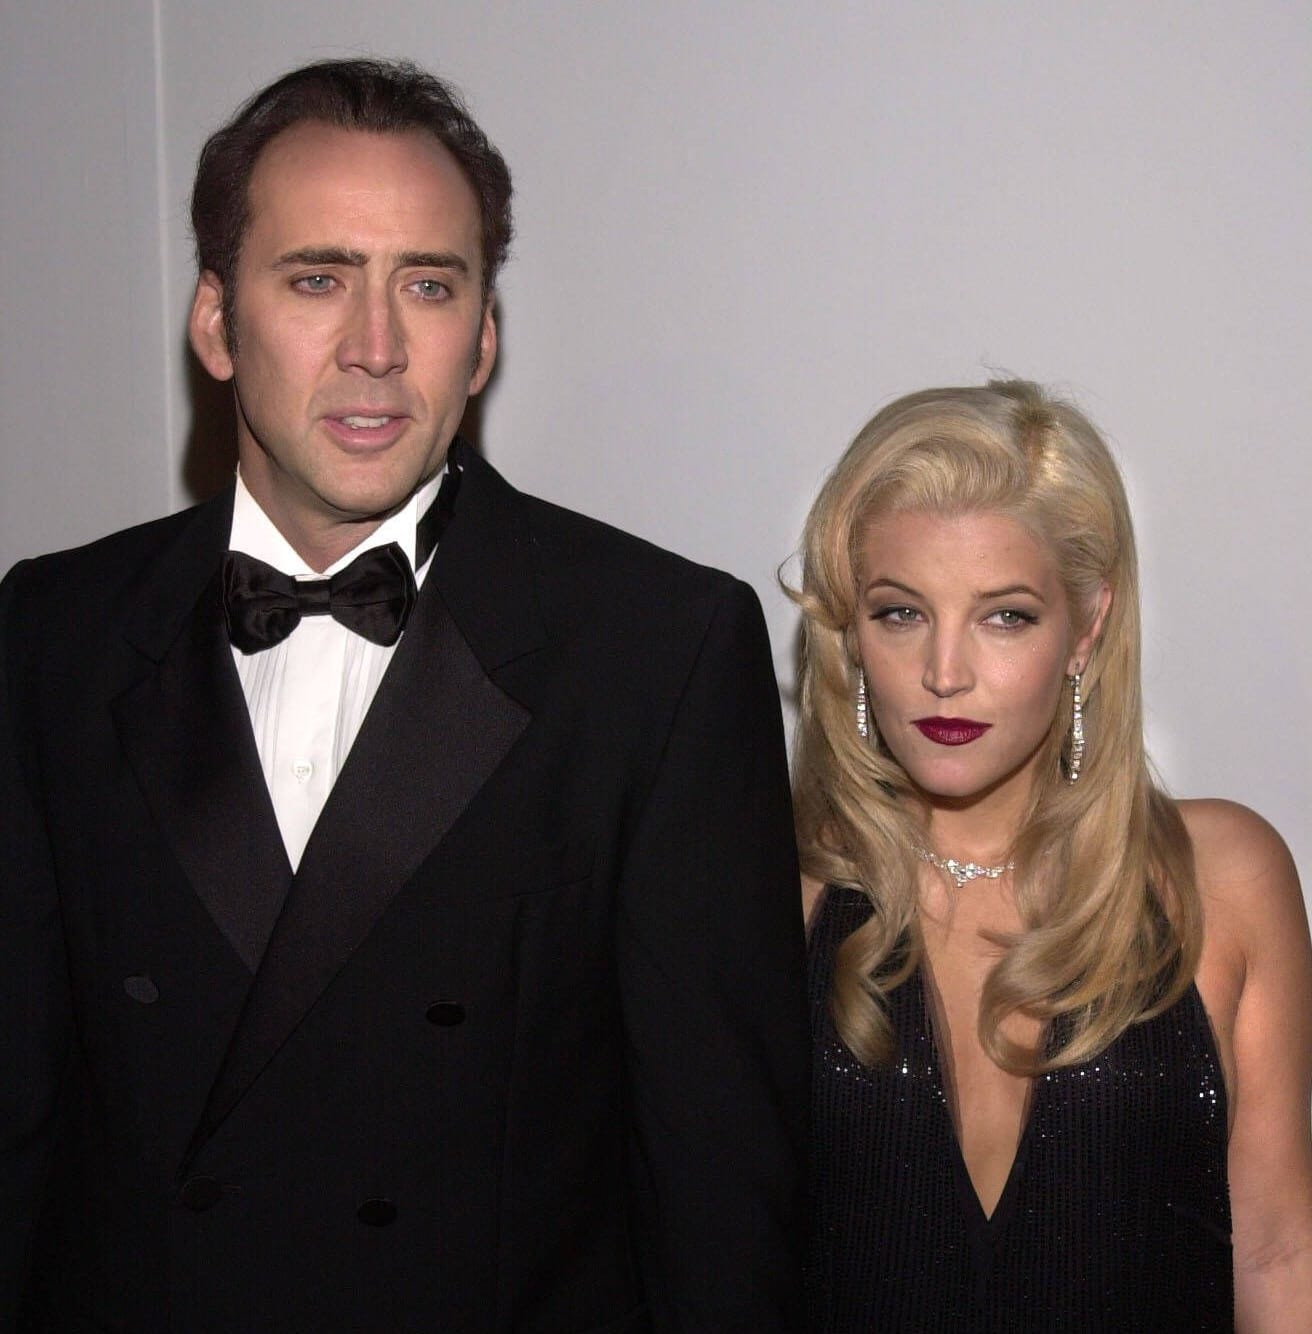 Mit dem Schauspieler Nicholas Cage war Lisa Marie Presley von 2002 bis 2004 verheiratet. Die beiden hatten sich auf einer Party kennengelernt.